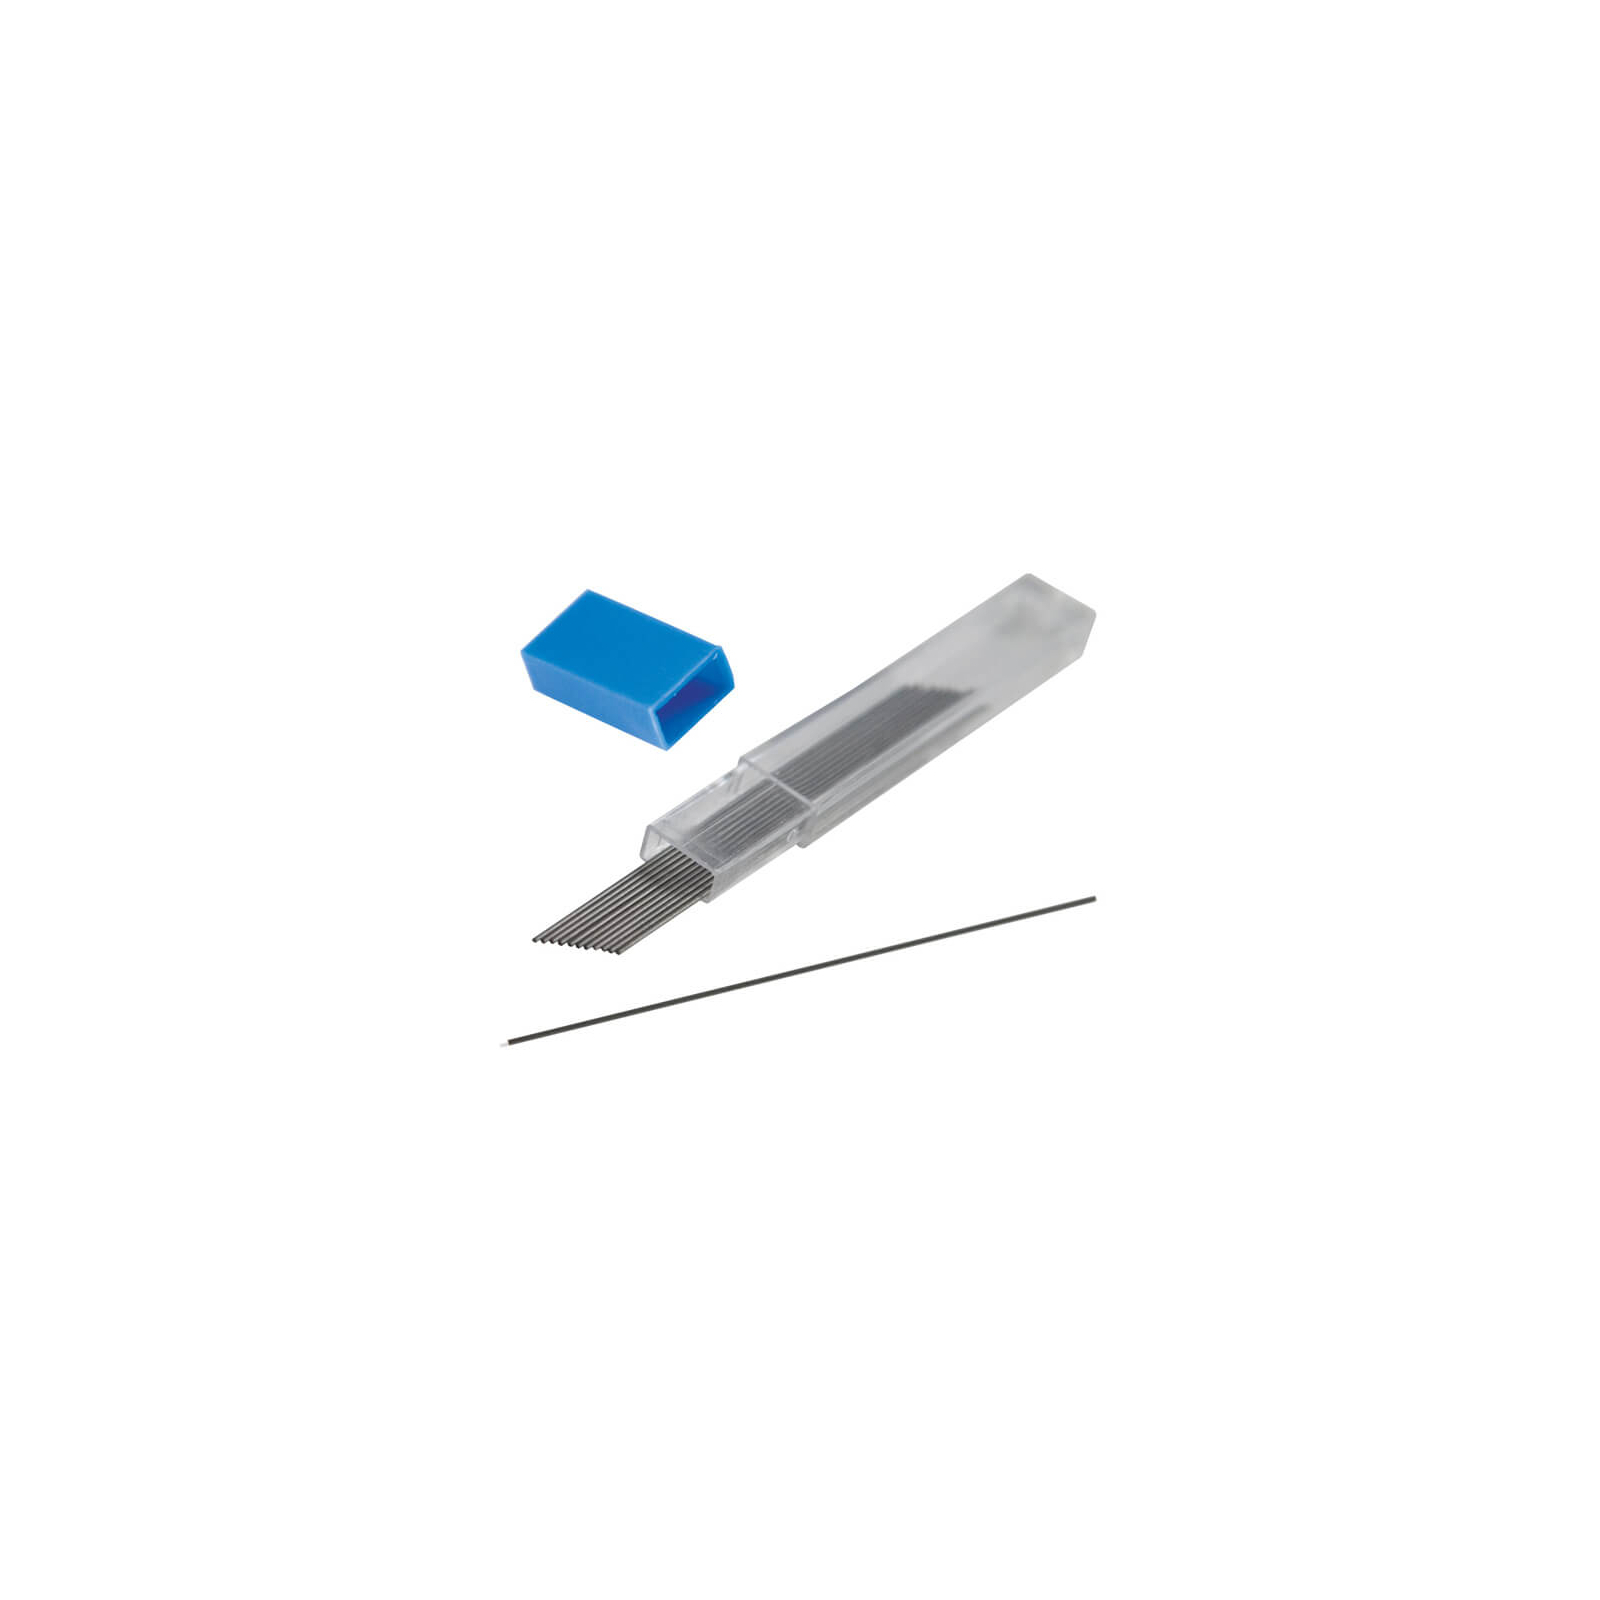 Грифель для механічного олівця Buromax HB 0.7мм, SET*12шт (BM.8698)